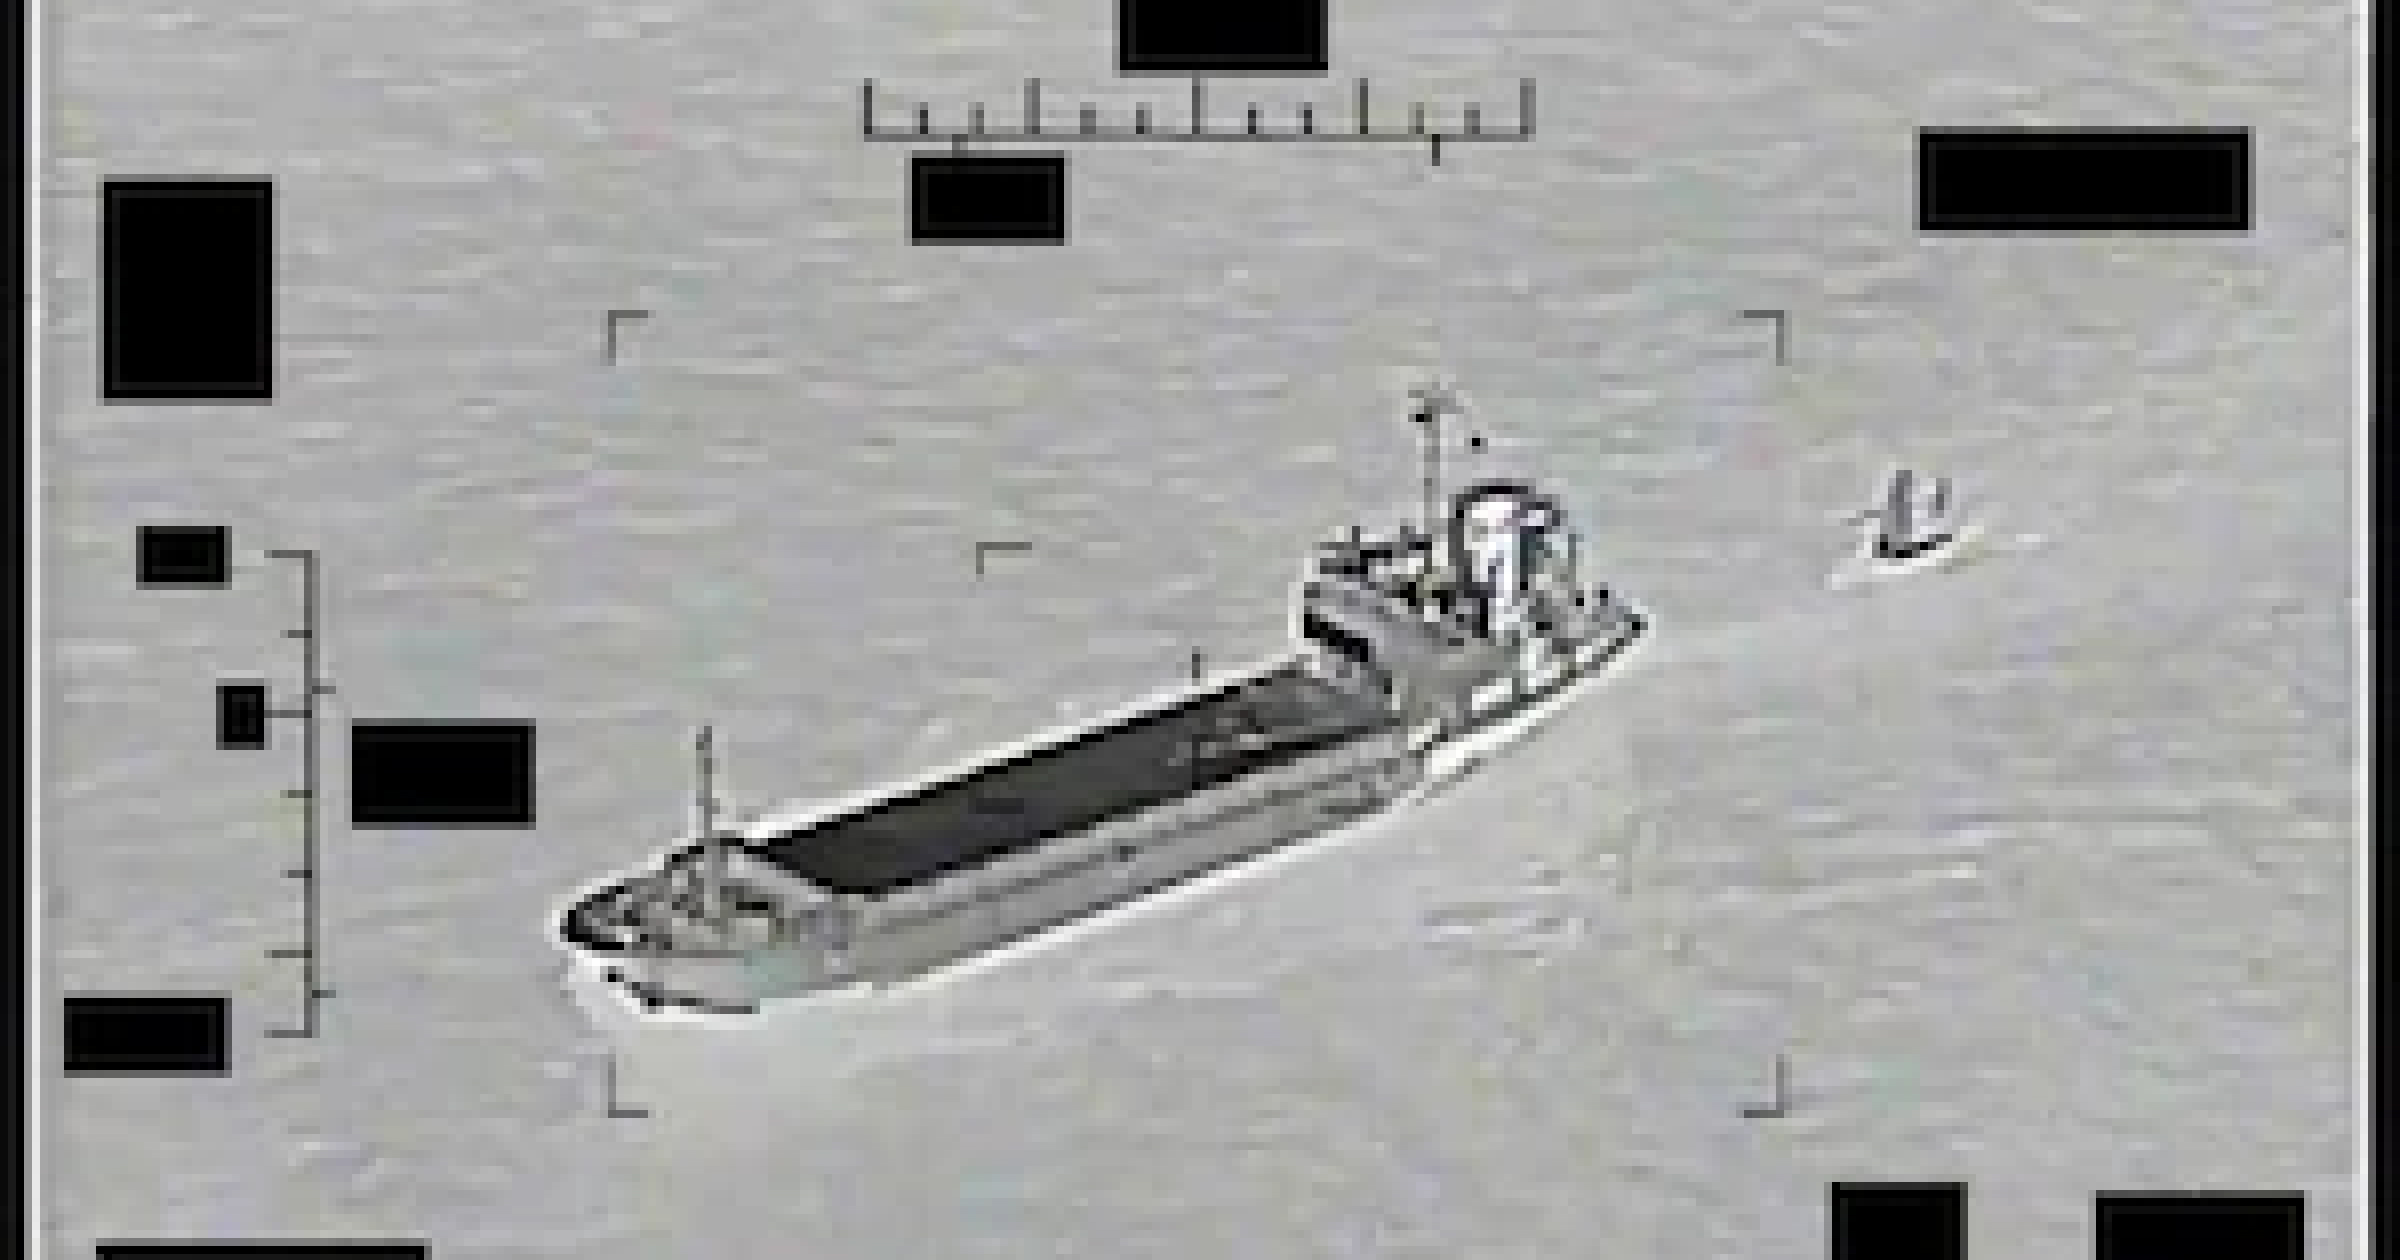 Іранське судно намагалося викрасти американський морський безпілотник у Перській затоці